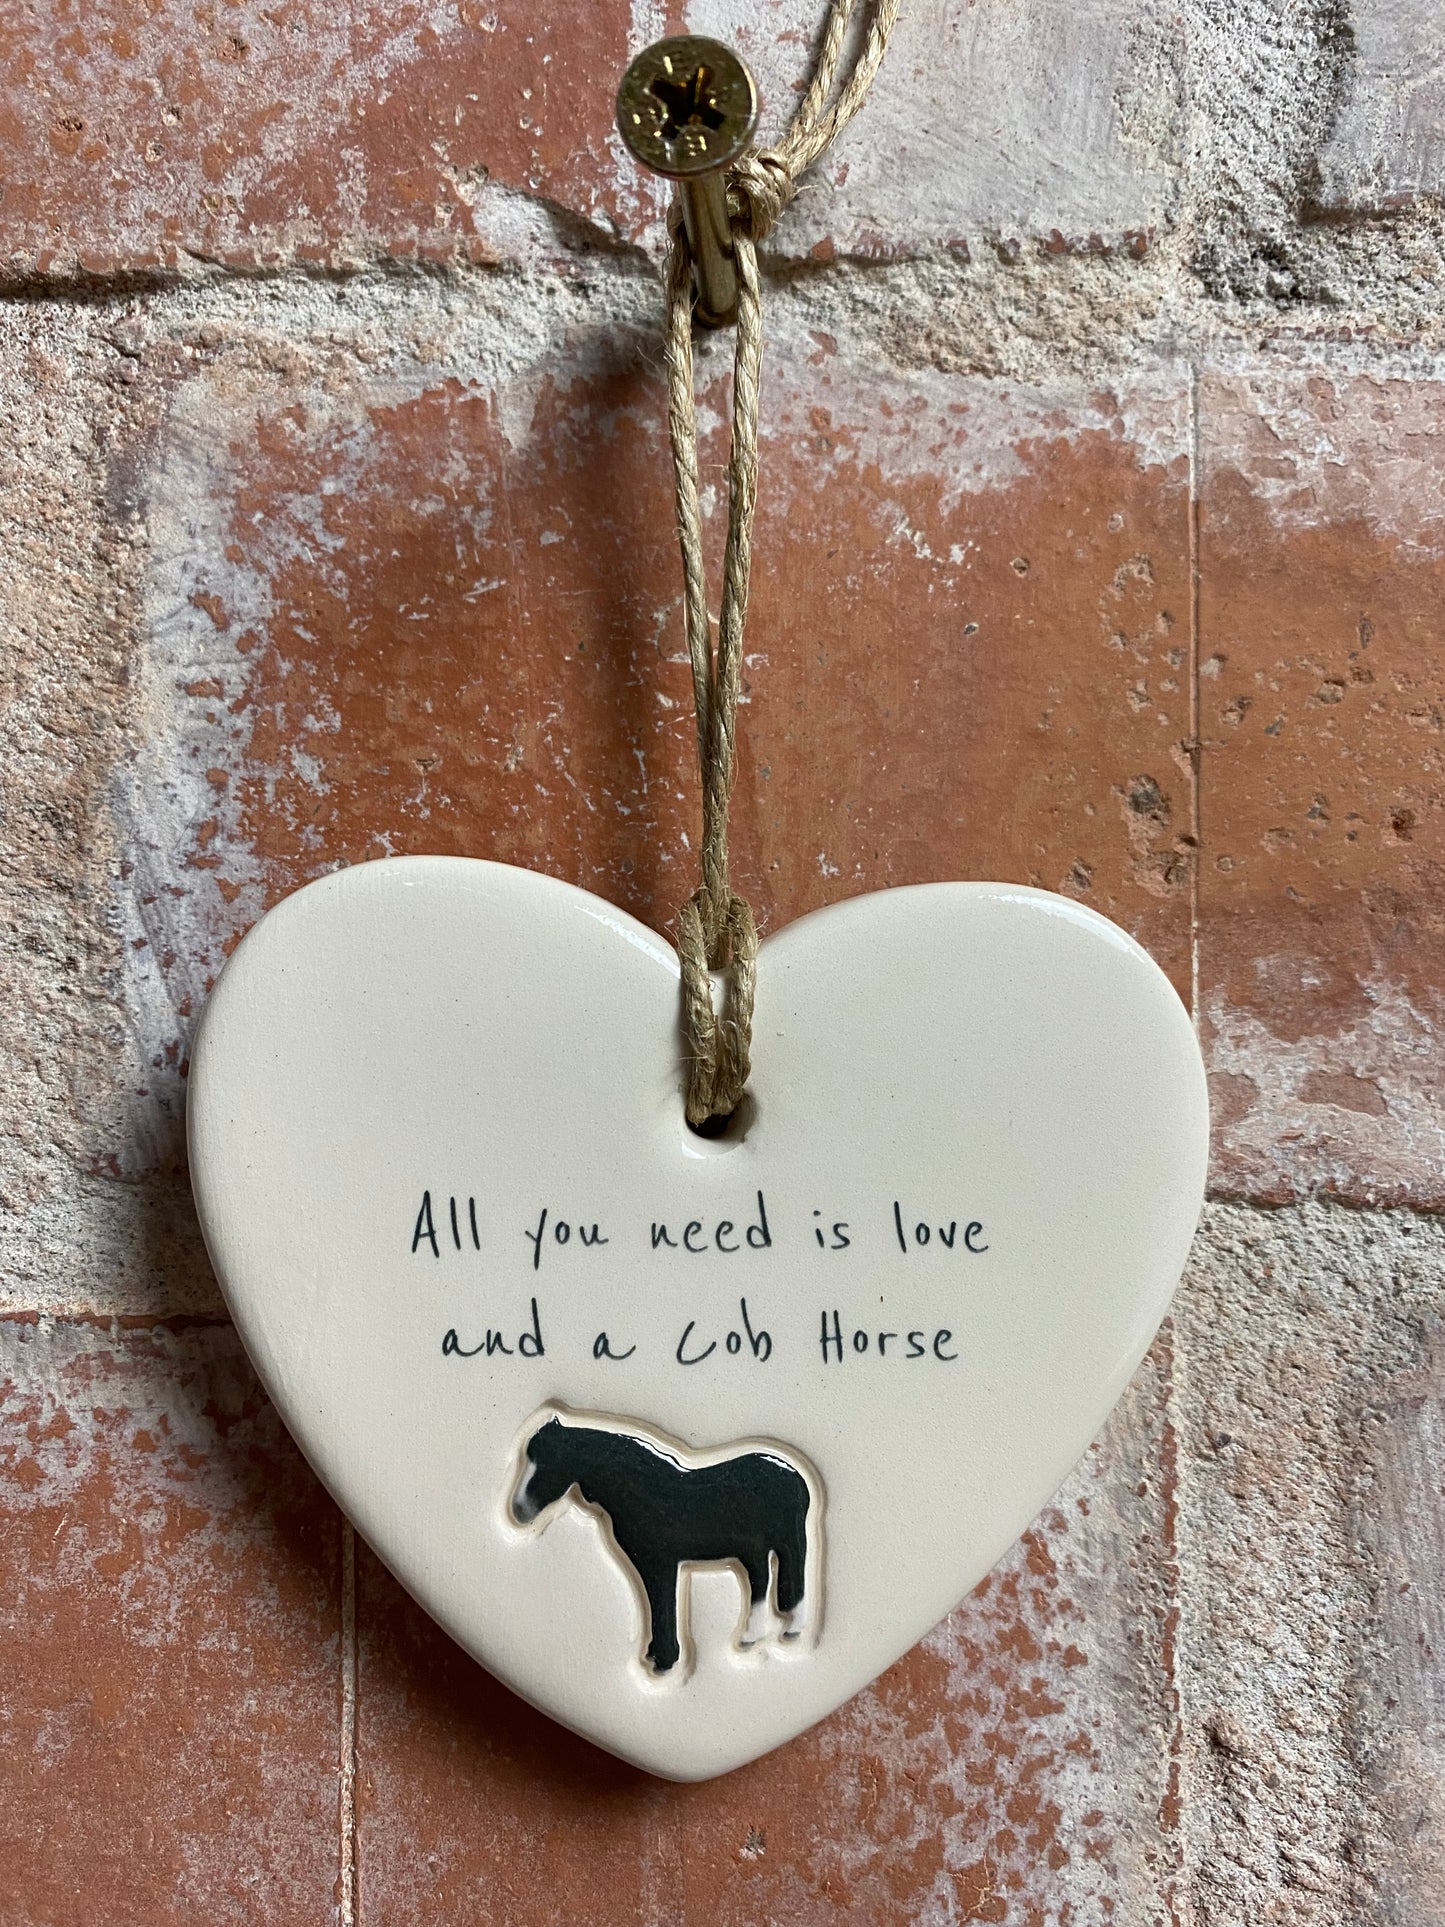 Cob Horse ceramic heart